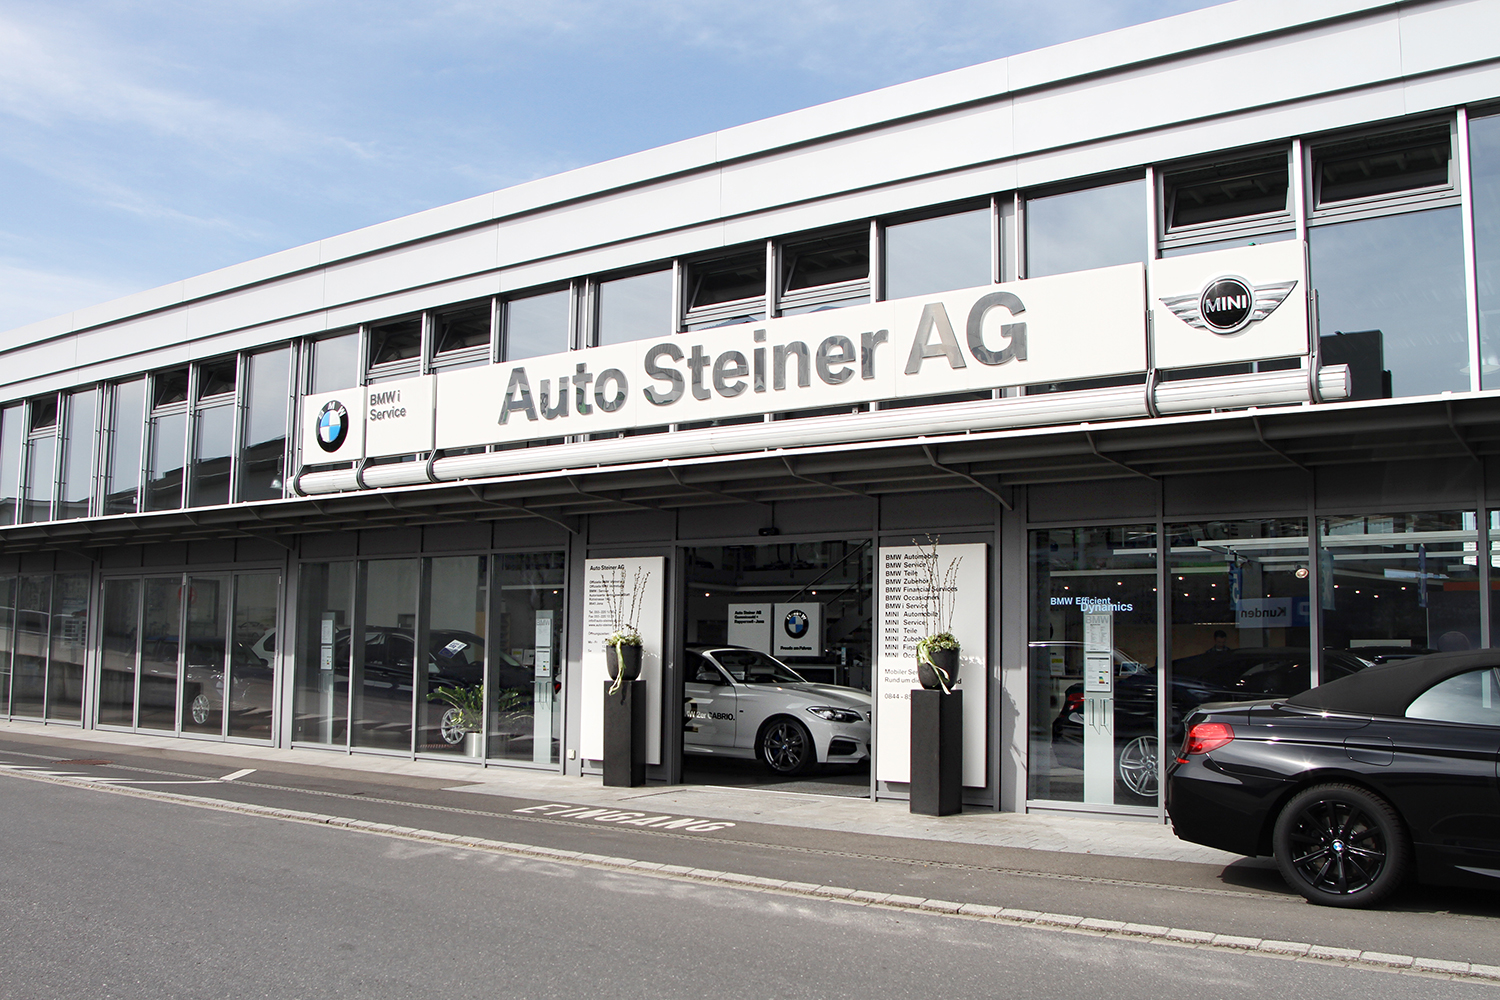 Auto Steiner | Studio Le Claire